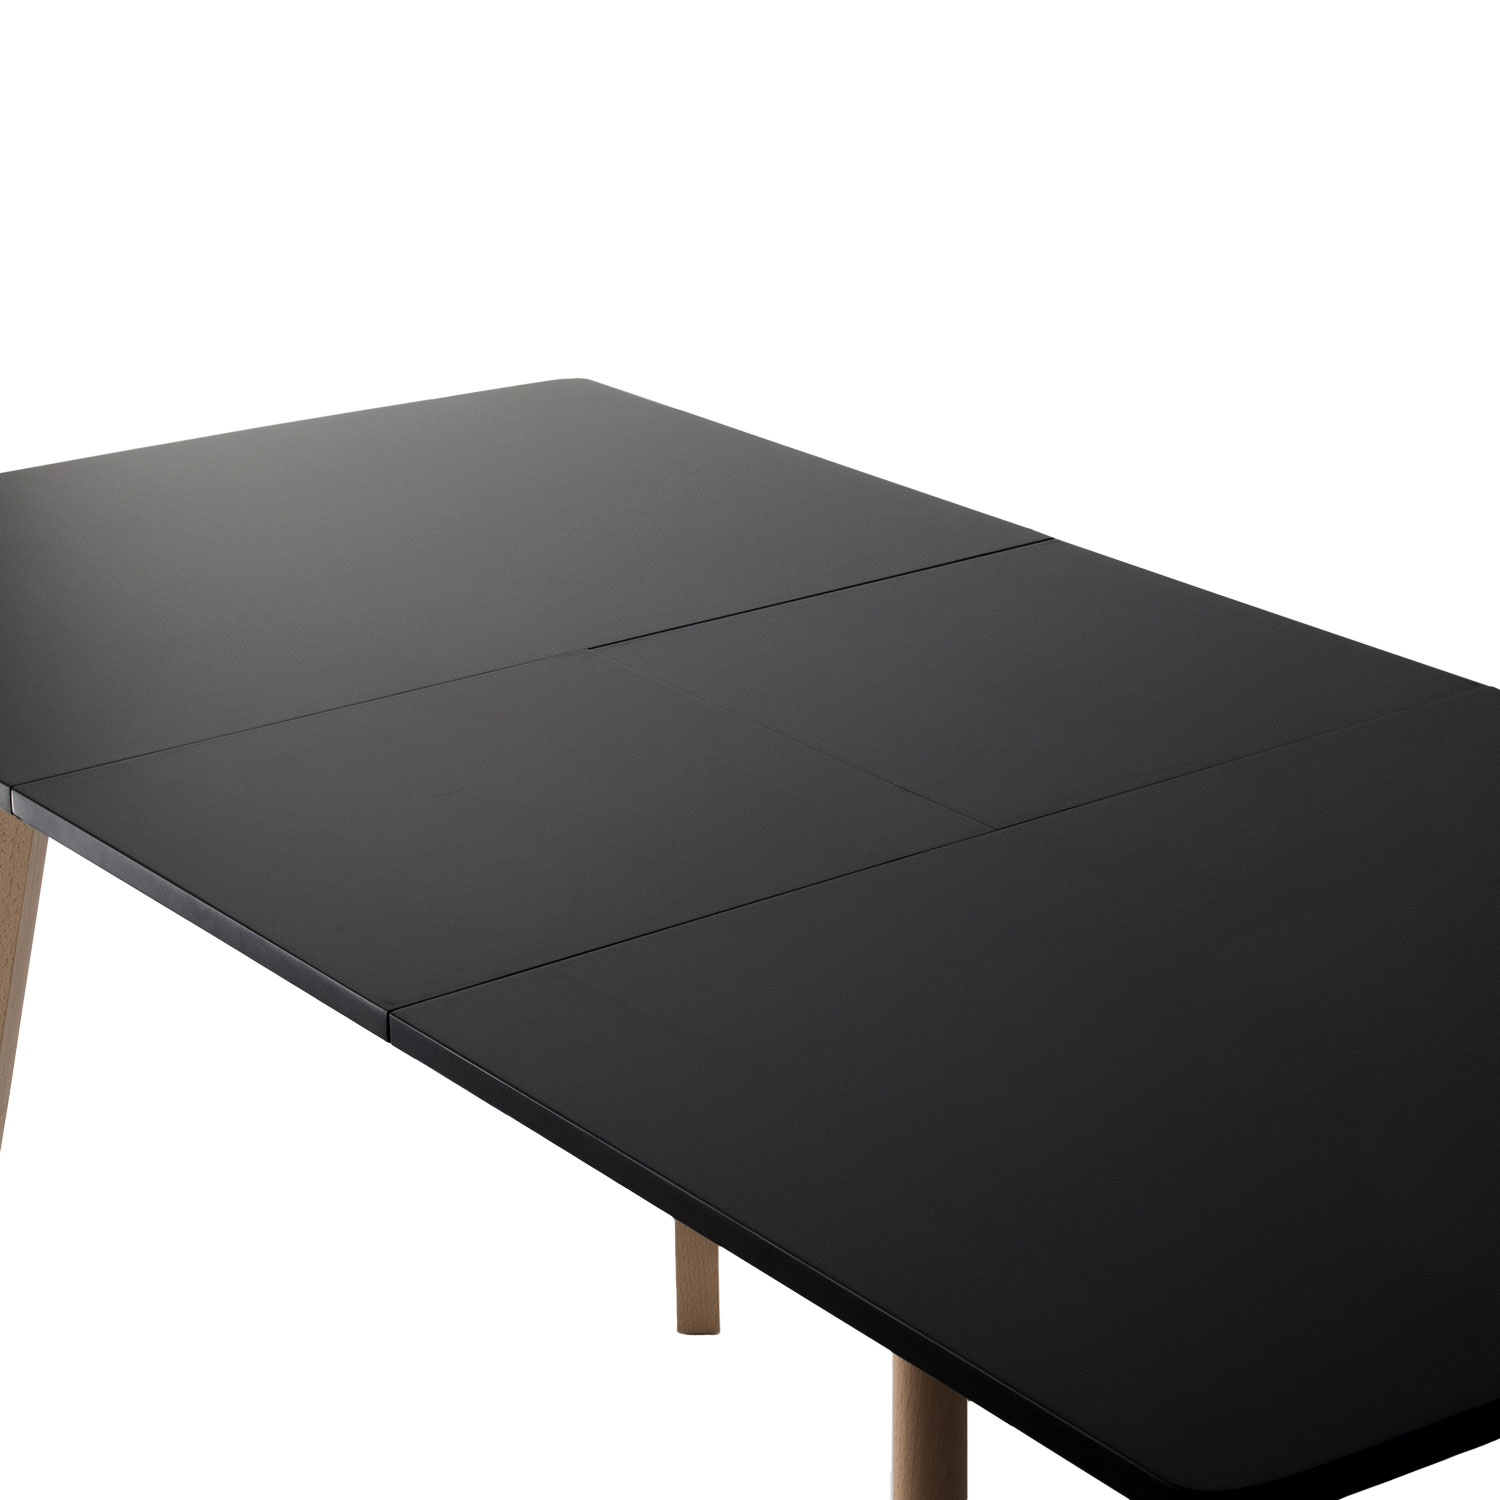 HELGA uitschuifbare tafel 120 / 160cm zwart